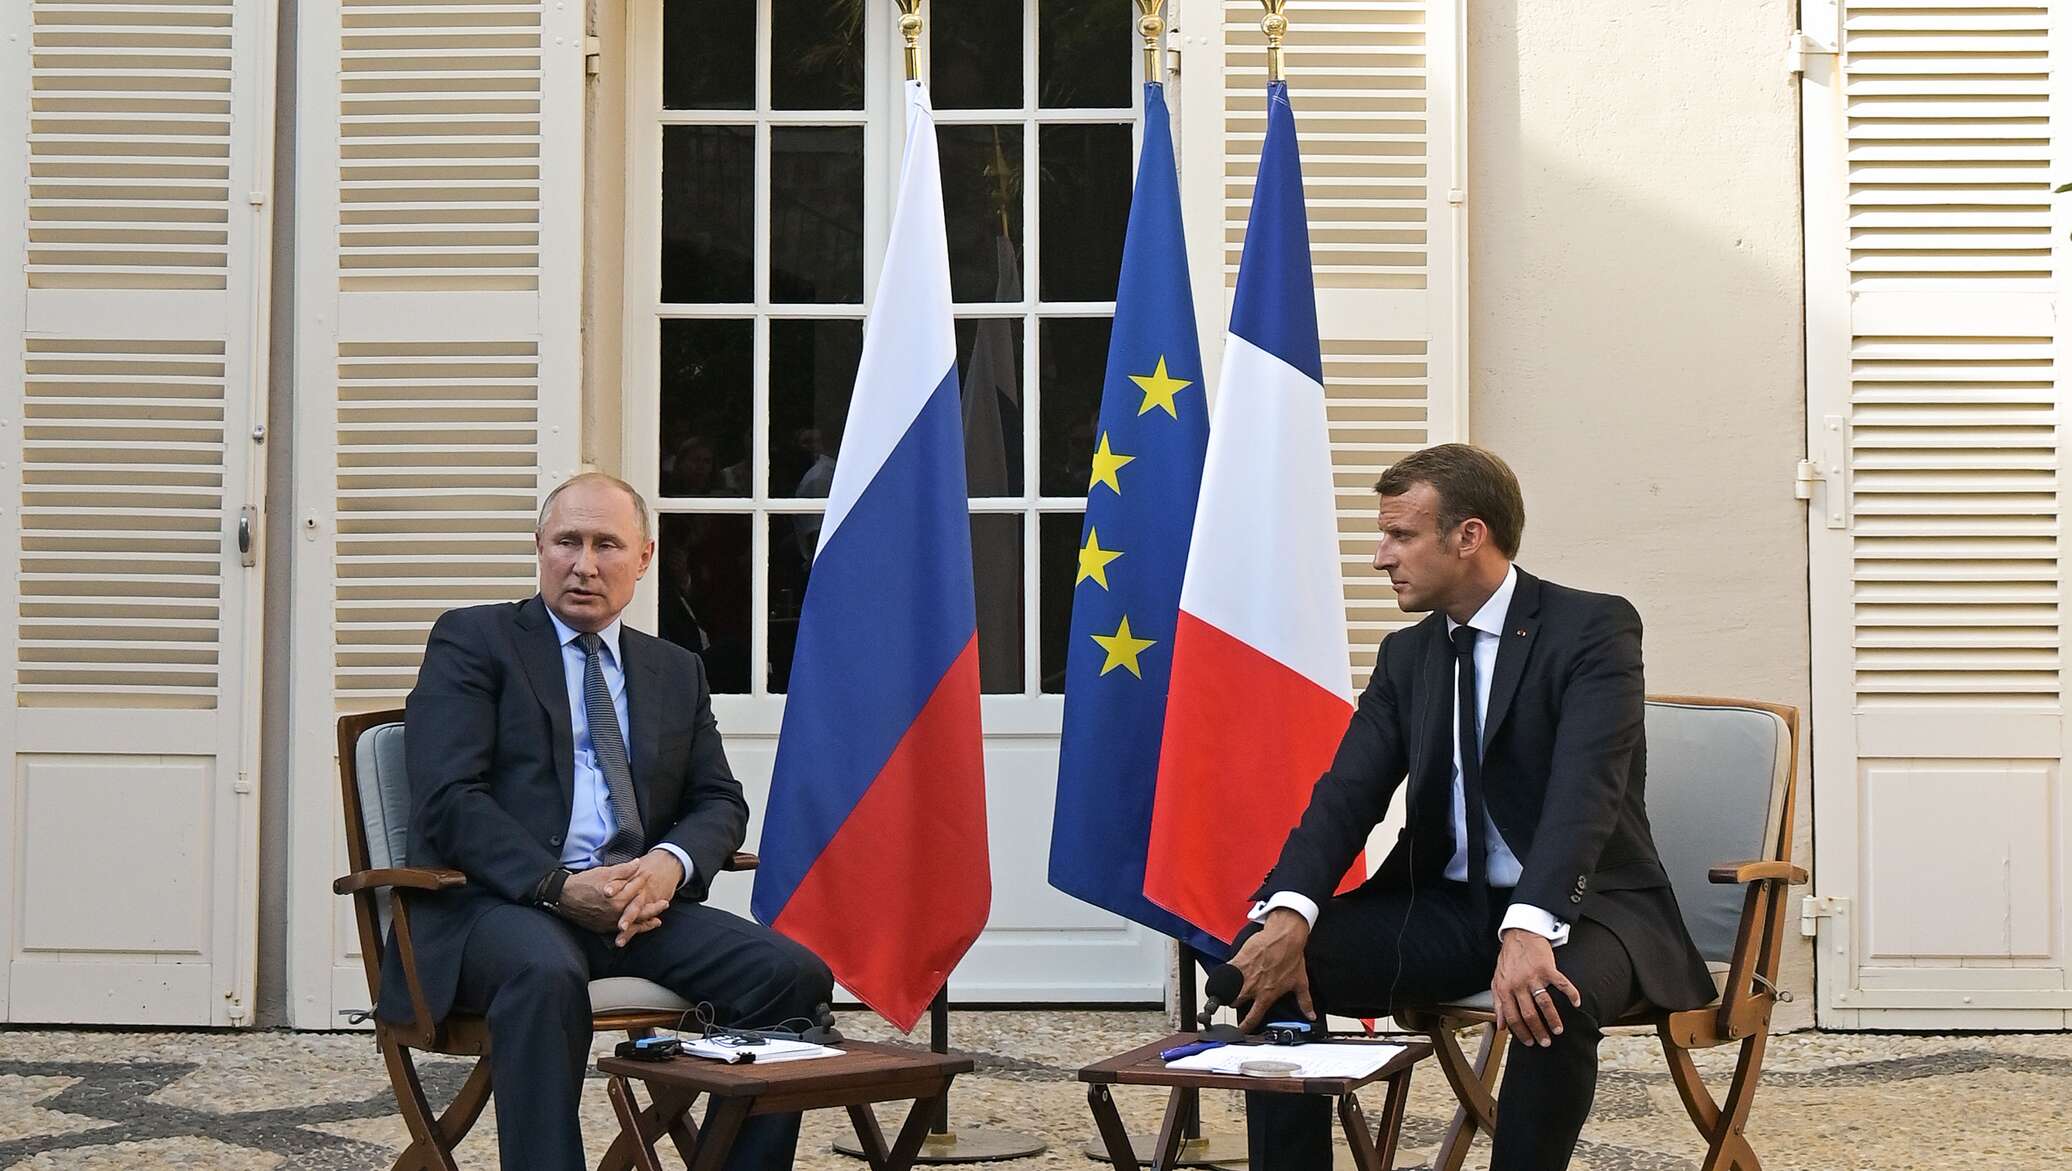 Переговоры 19. Франция отношение к русским сейчас. Макрон смотрит на Путина сидят рядом на заседании.